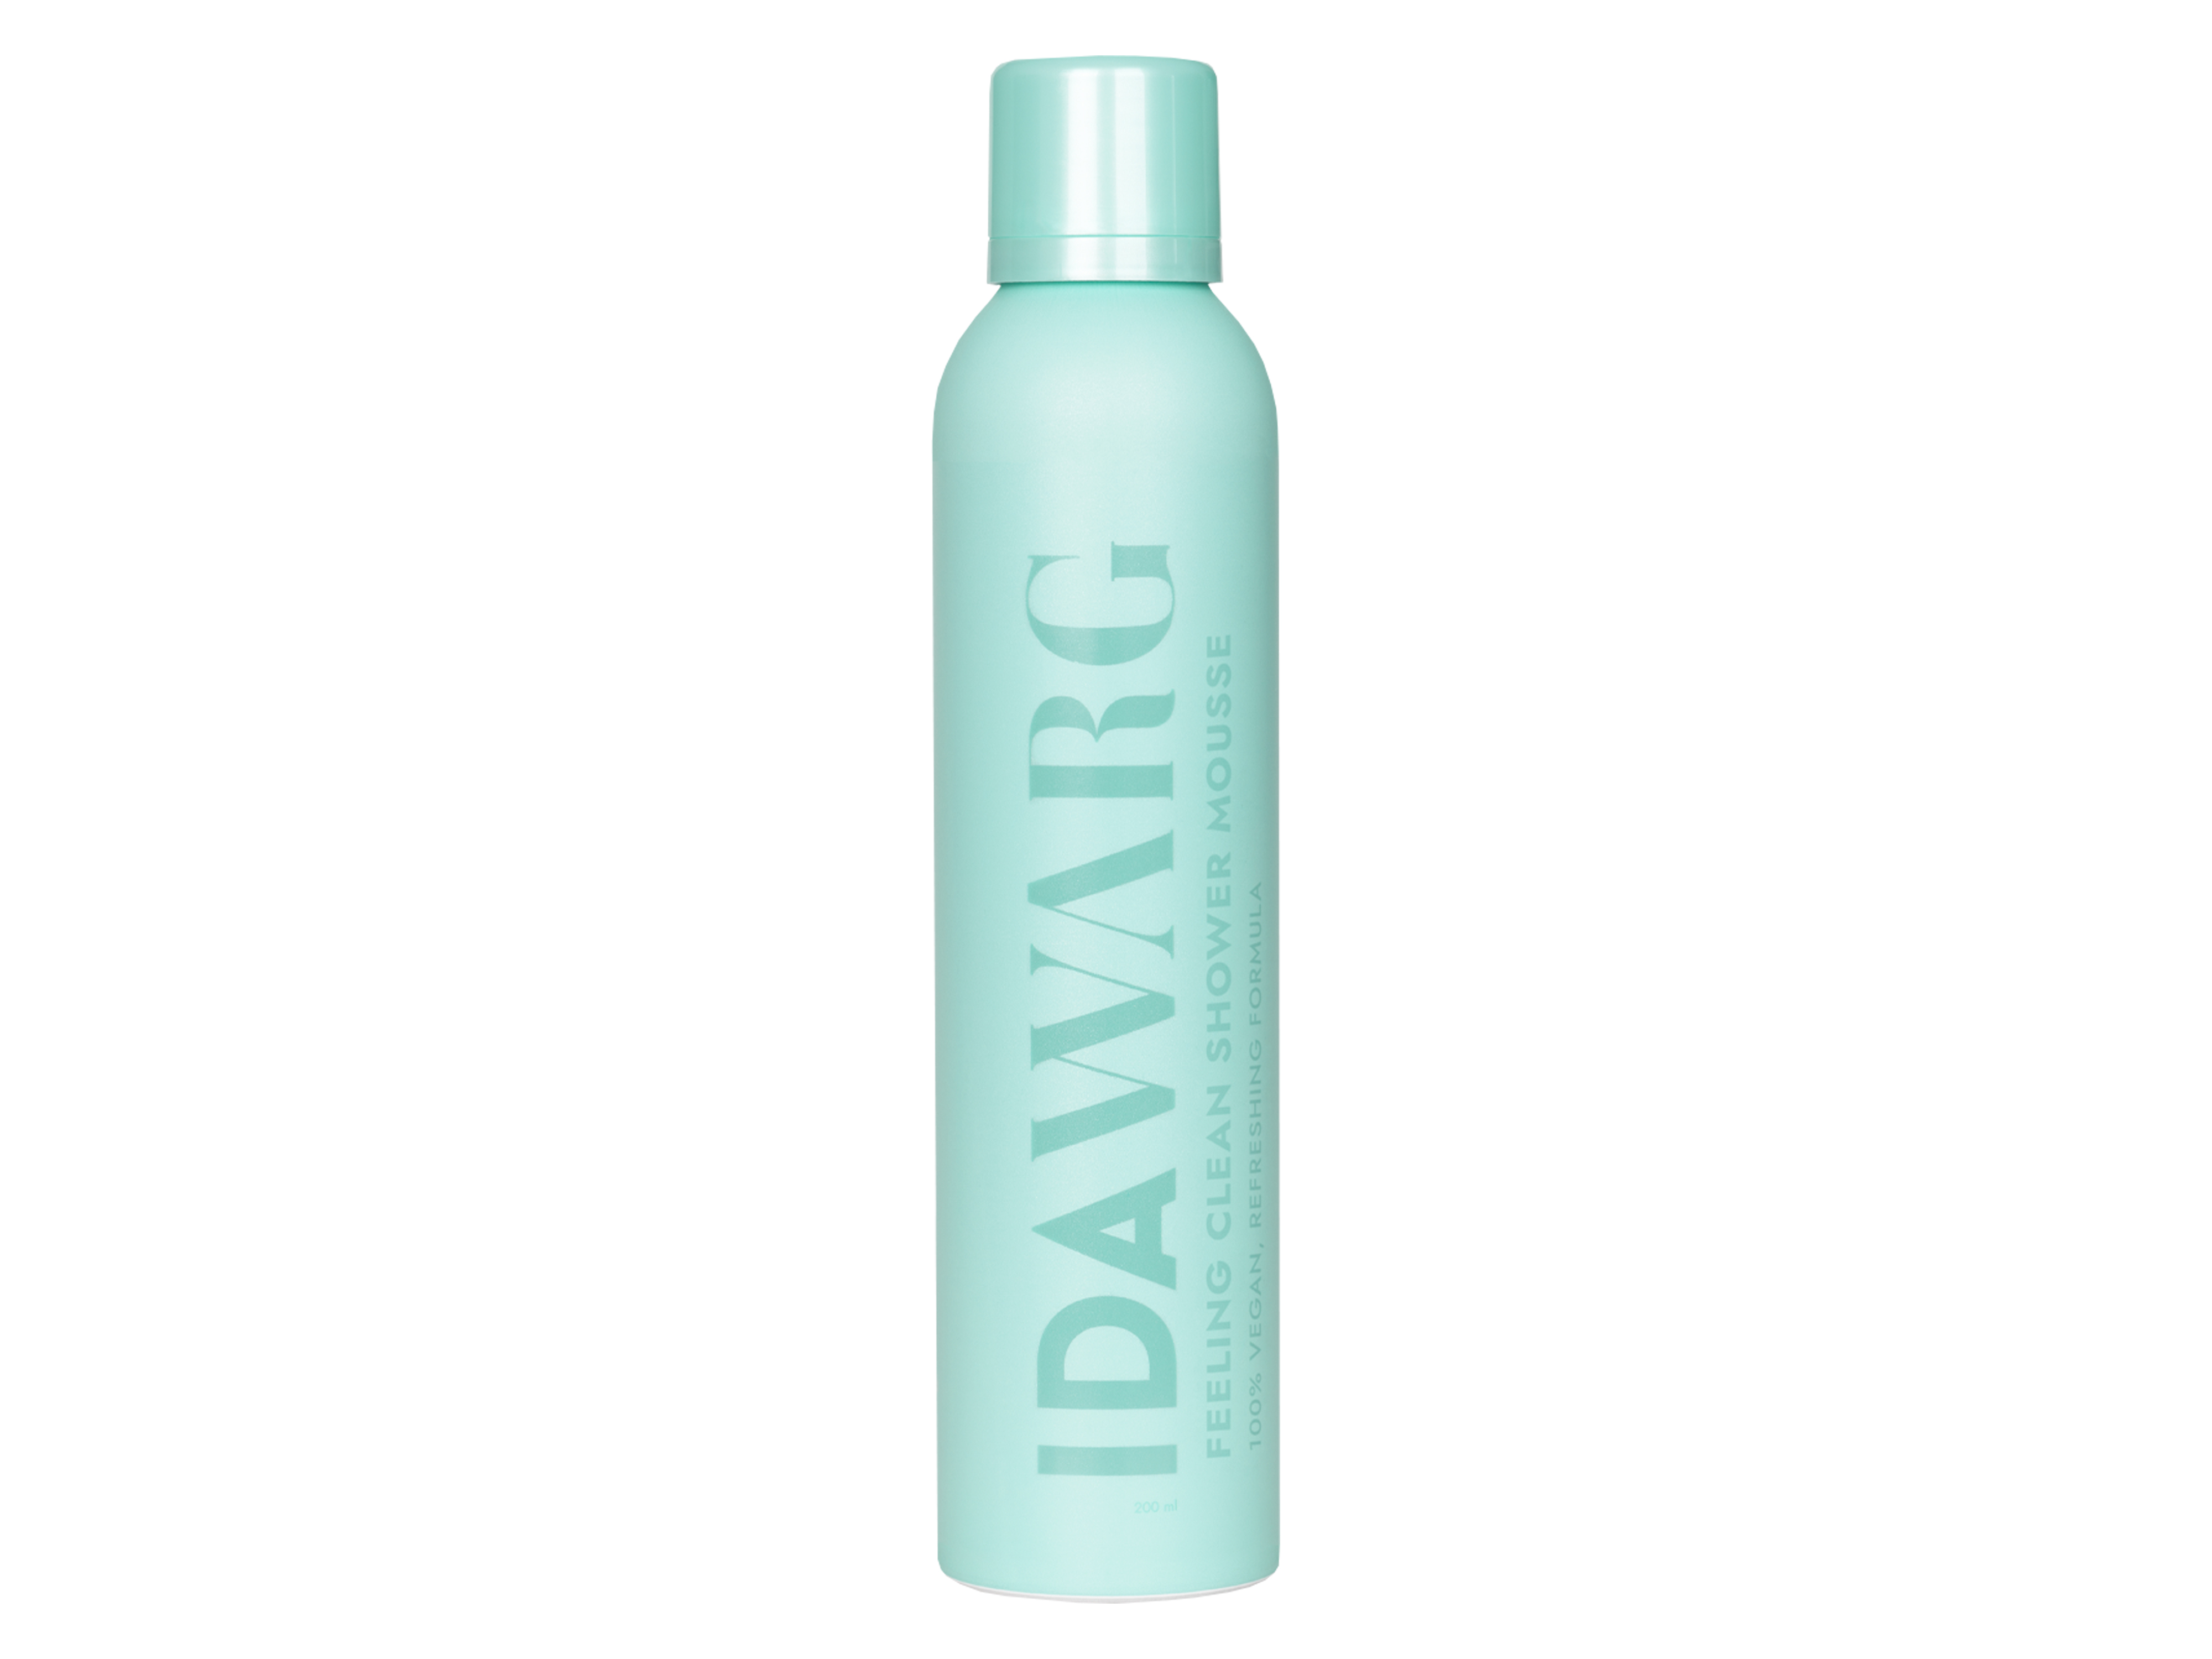 Ida Warg Beauty Feeling Clean Shower Mousse, 200 ml